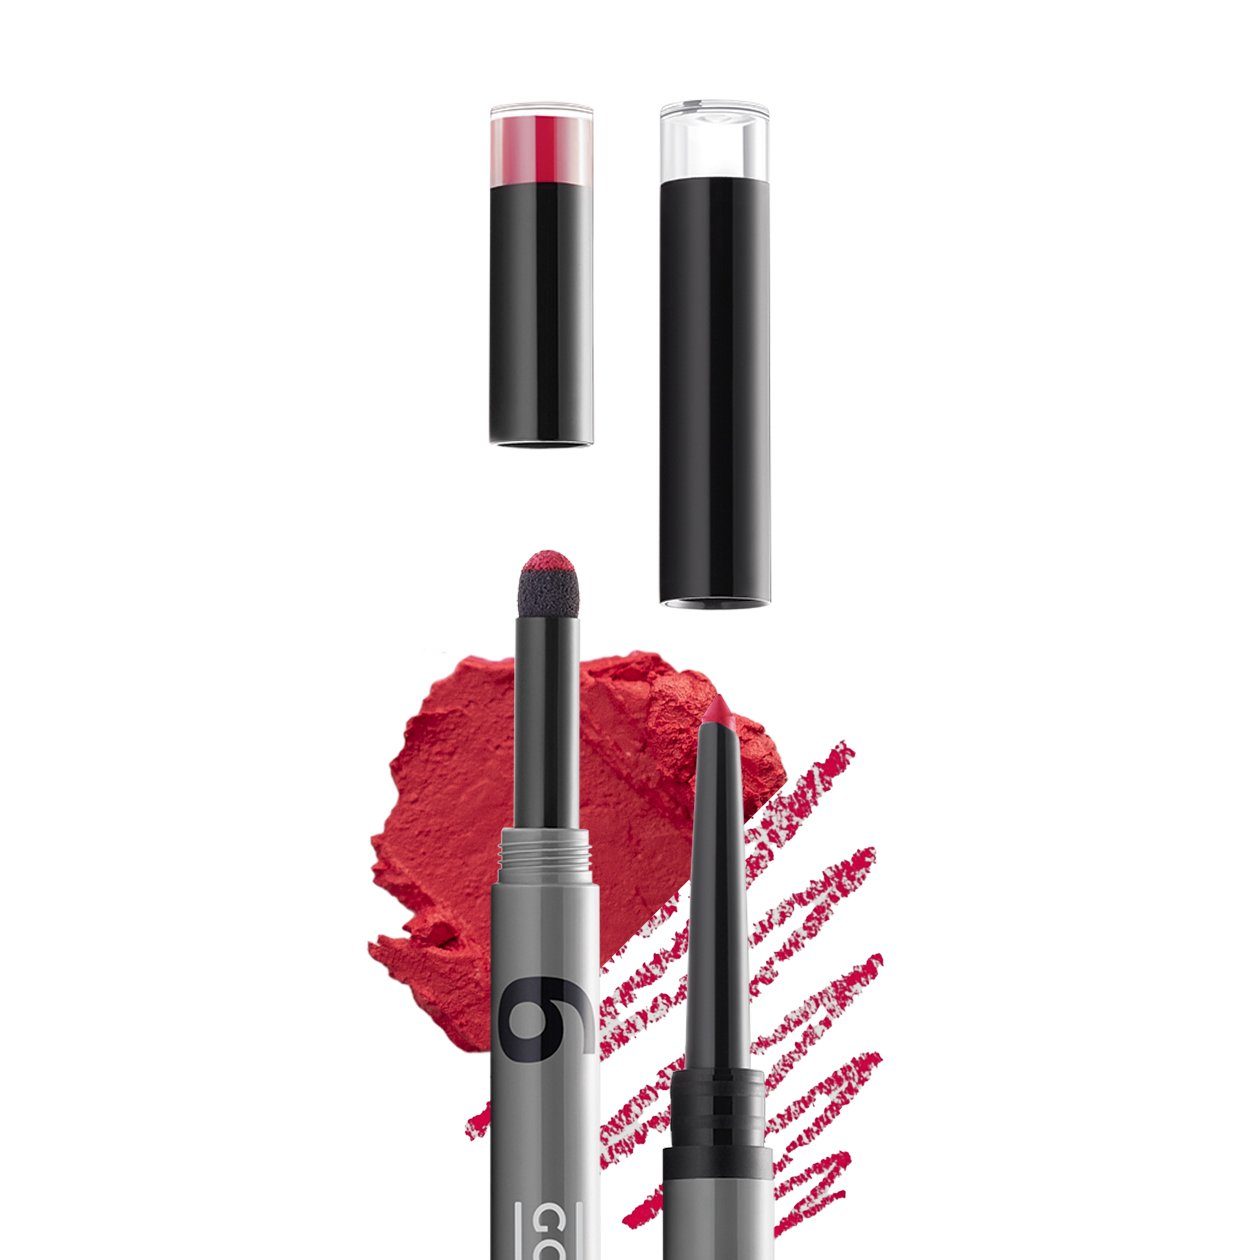 Gokos Lippenstift LipDesigner, für perfekt definierte Lippen heat wave 6703 - Ein intensives, leicht kühles, sattes Rot, mit farblich passendem Lipliner. | Lippenstifte